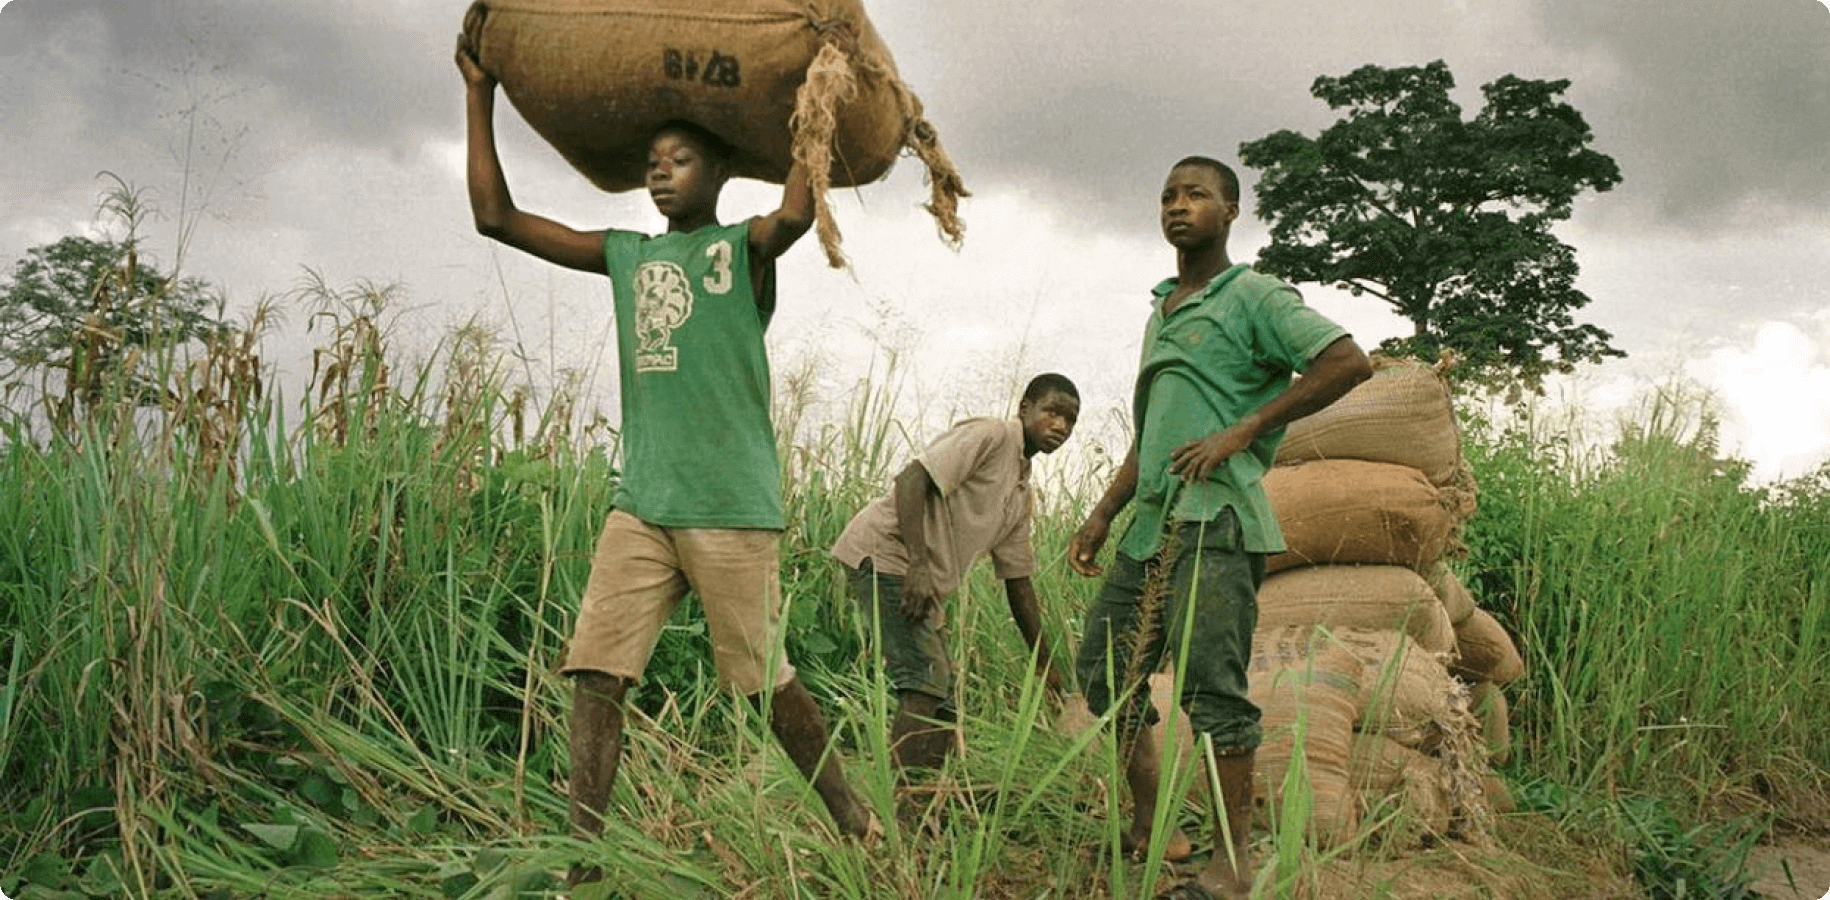 Child cocoa farm workers